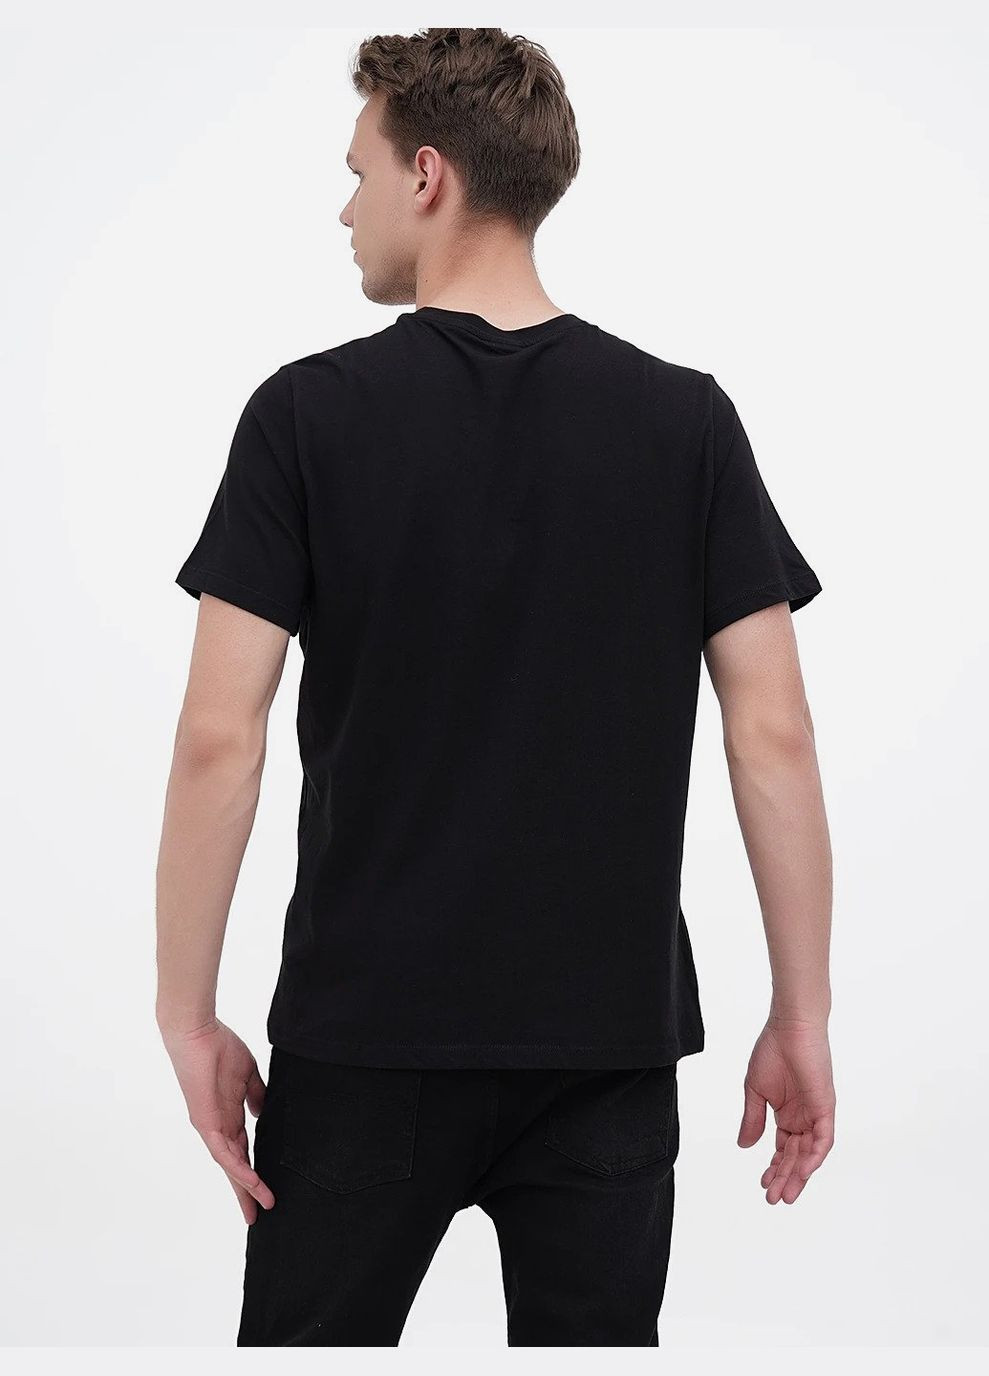 Черная футболка прямого кроя для мужчины 1036336 H&M